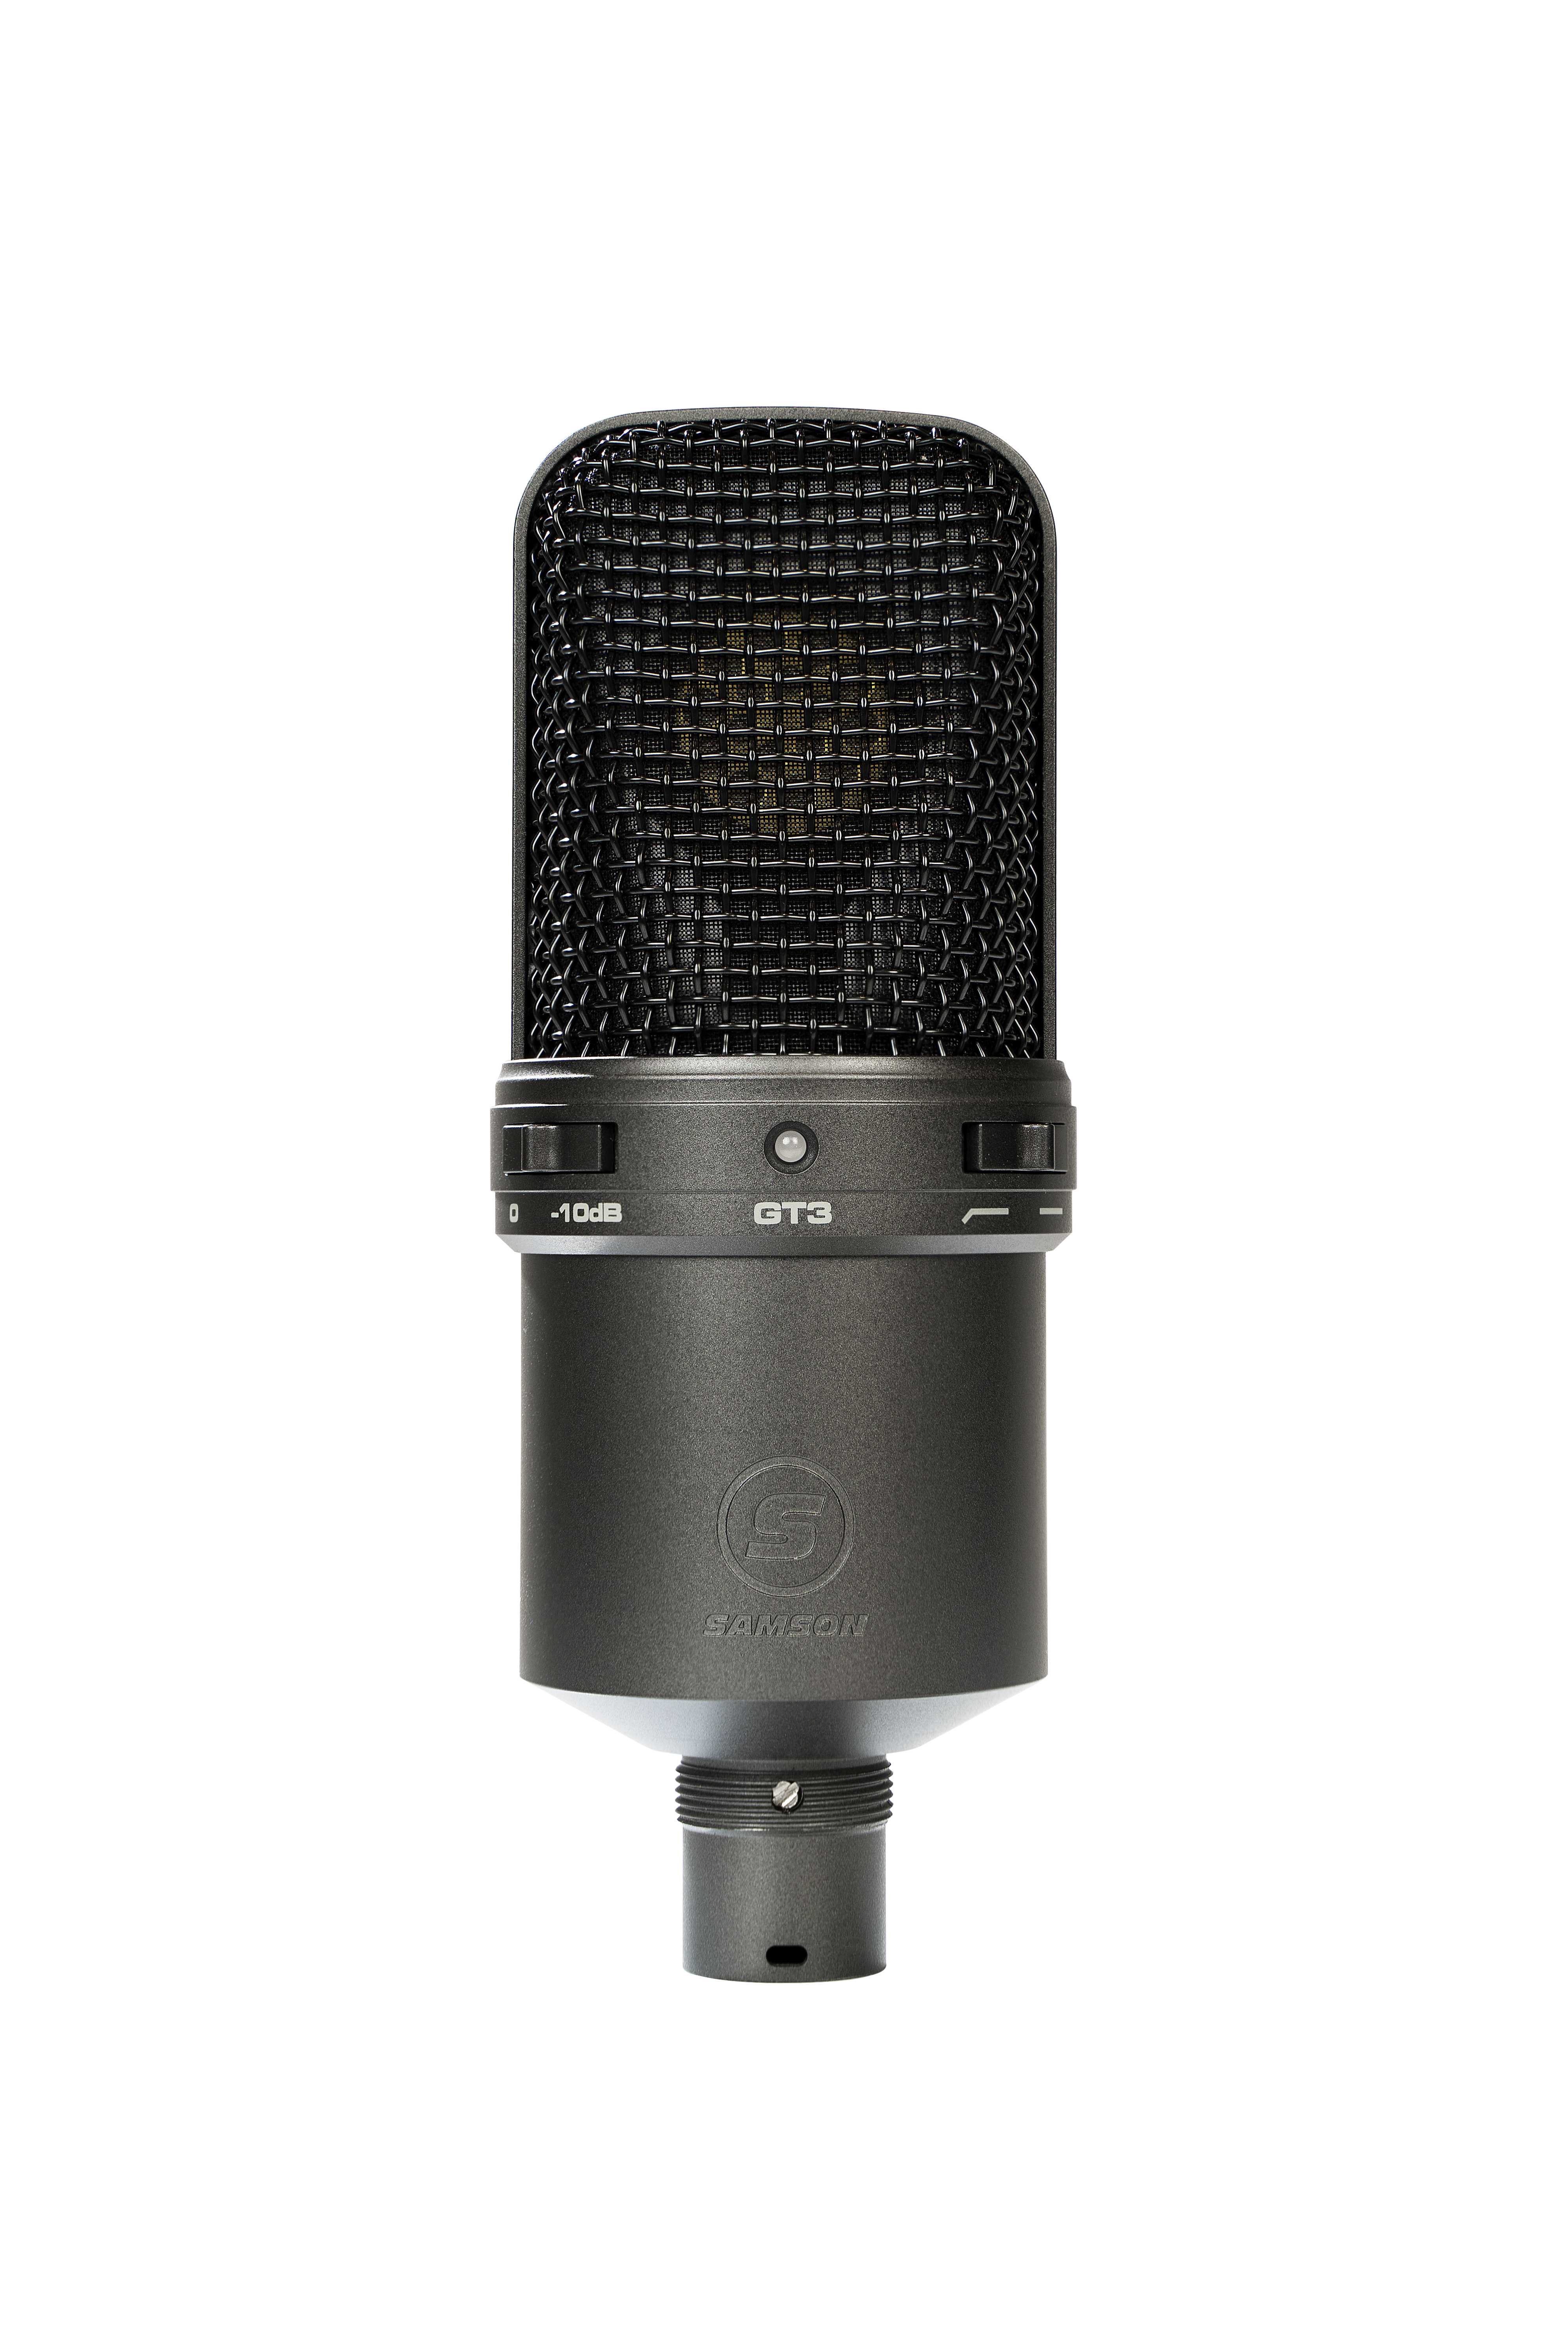 SAMSON GT3 - Микрофон студийный, конденсаторный, кардиоидный, с большой диафрагмой